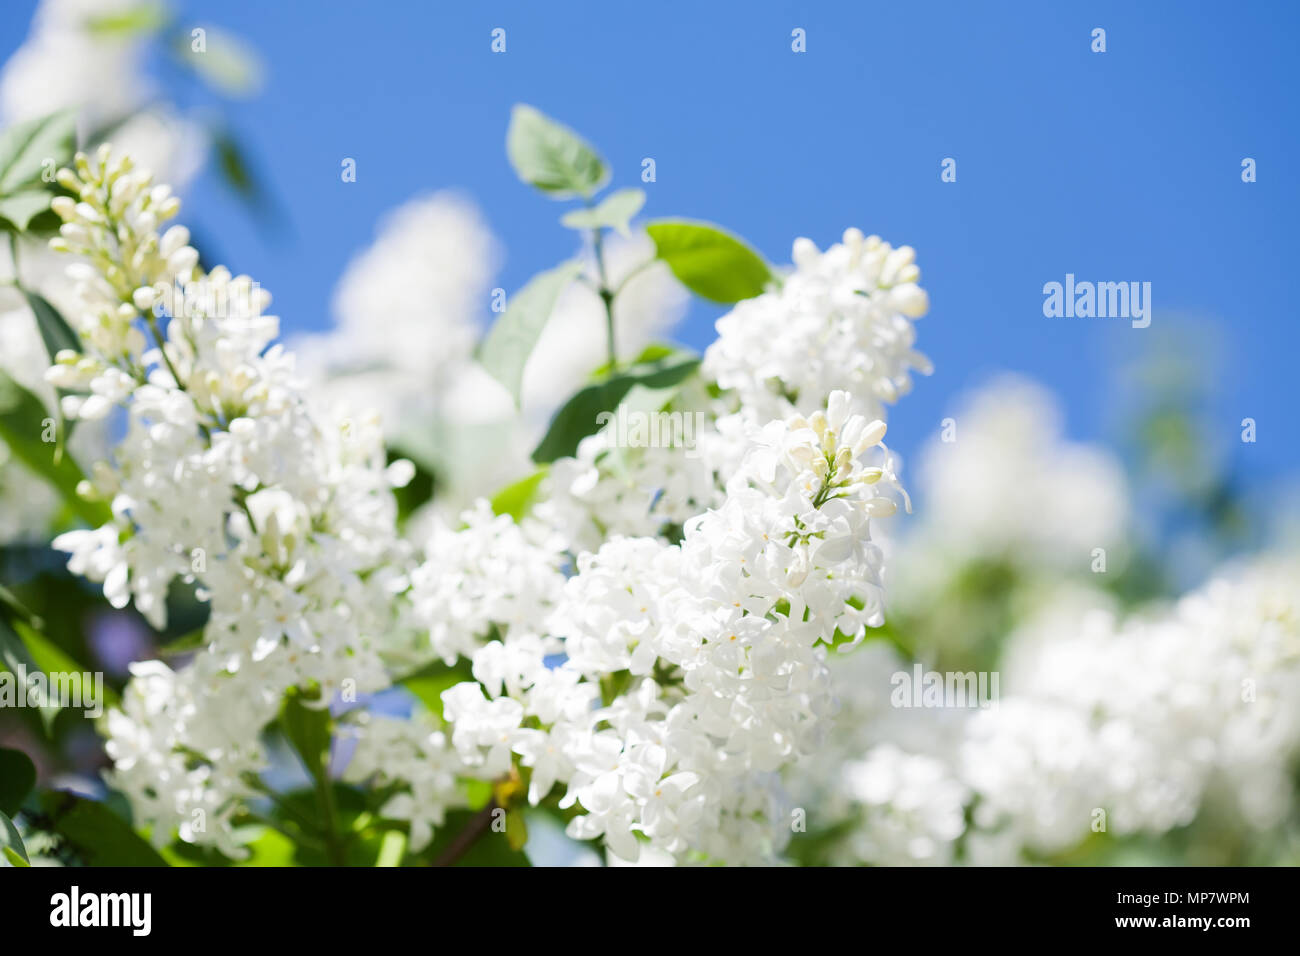 Beau printemps floral background avec floraison lilas commun Syringa vulgaris cultivar blanche de bush. Paysage de printemps avec bouquet de fleurs tendres. lily-white de plantes fleuries historique contre le ciel bleu. Focus Sof Banque D'Images